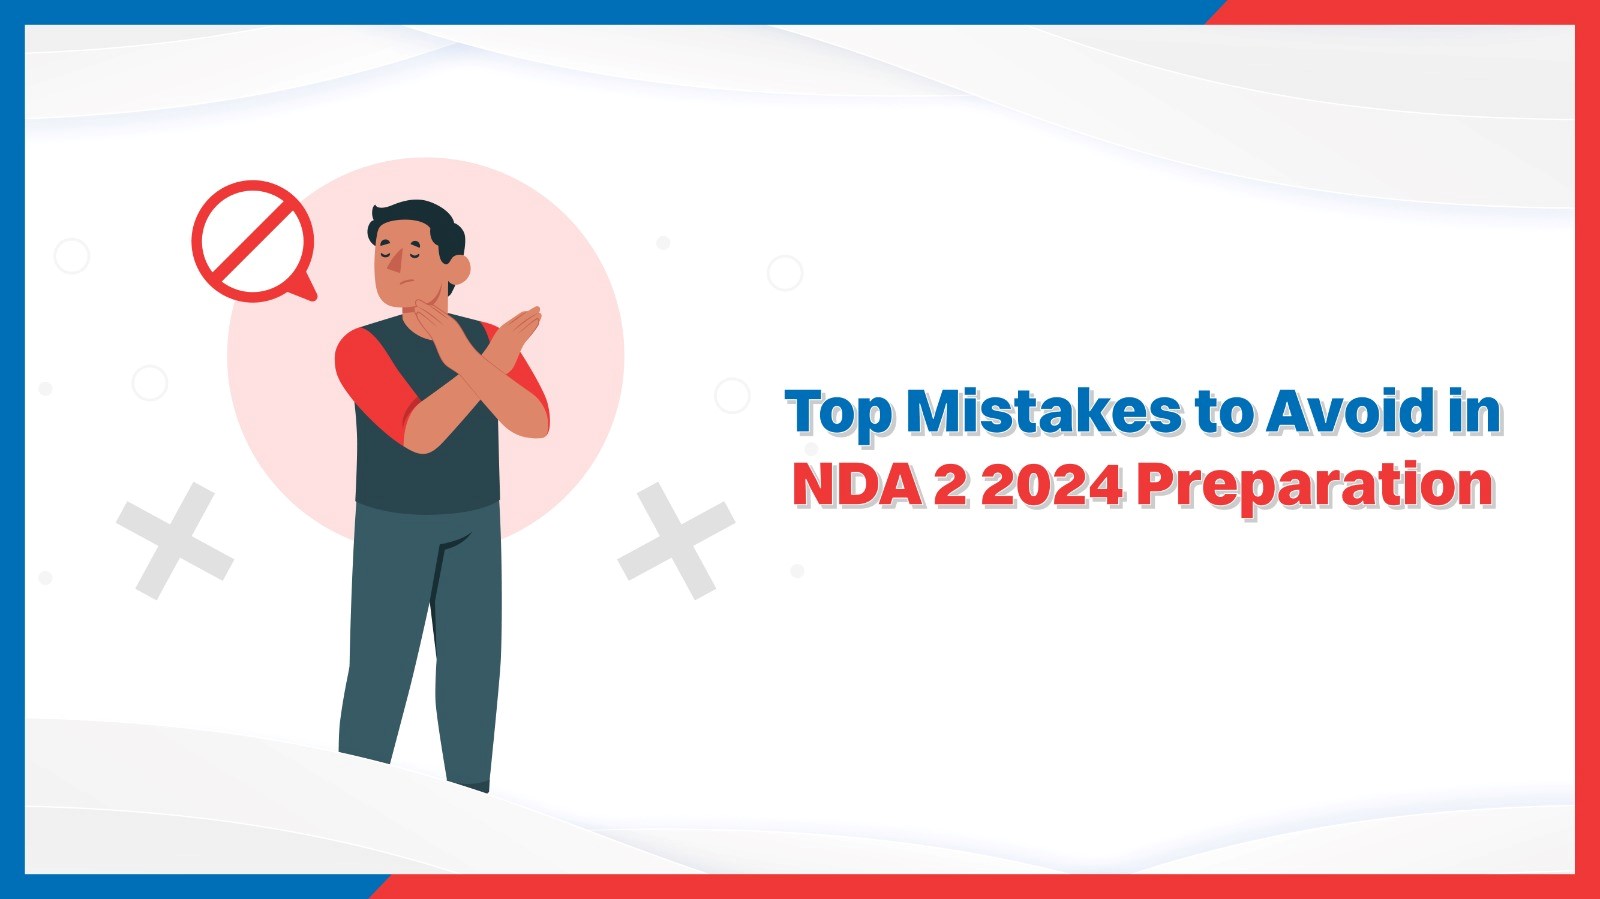 Top Mistakes to Avoid in NDA 2 2024 Preparation.jpg